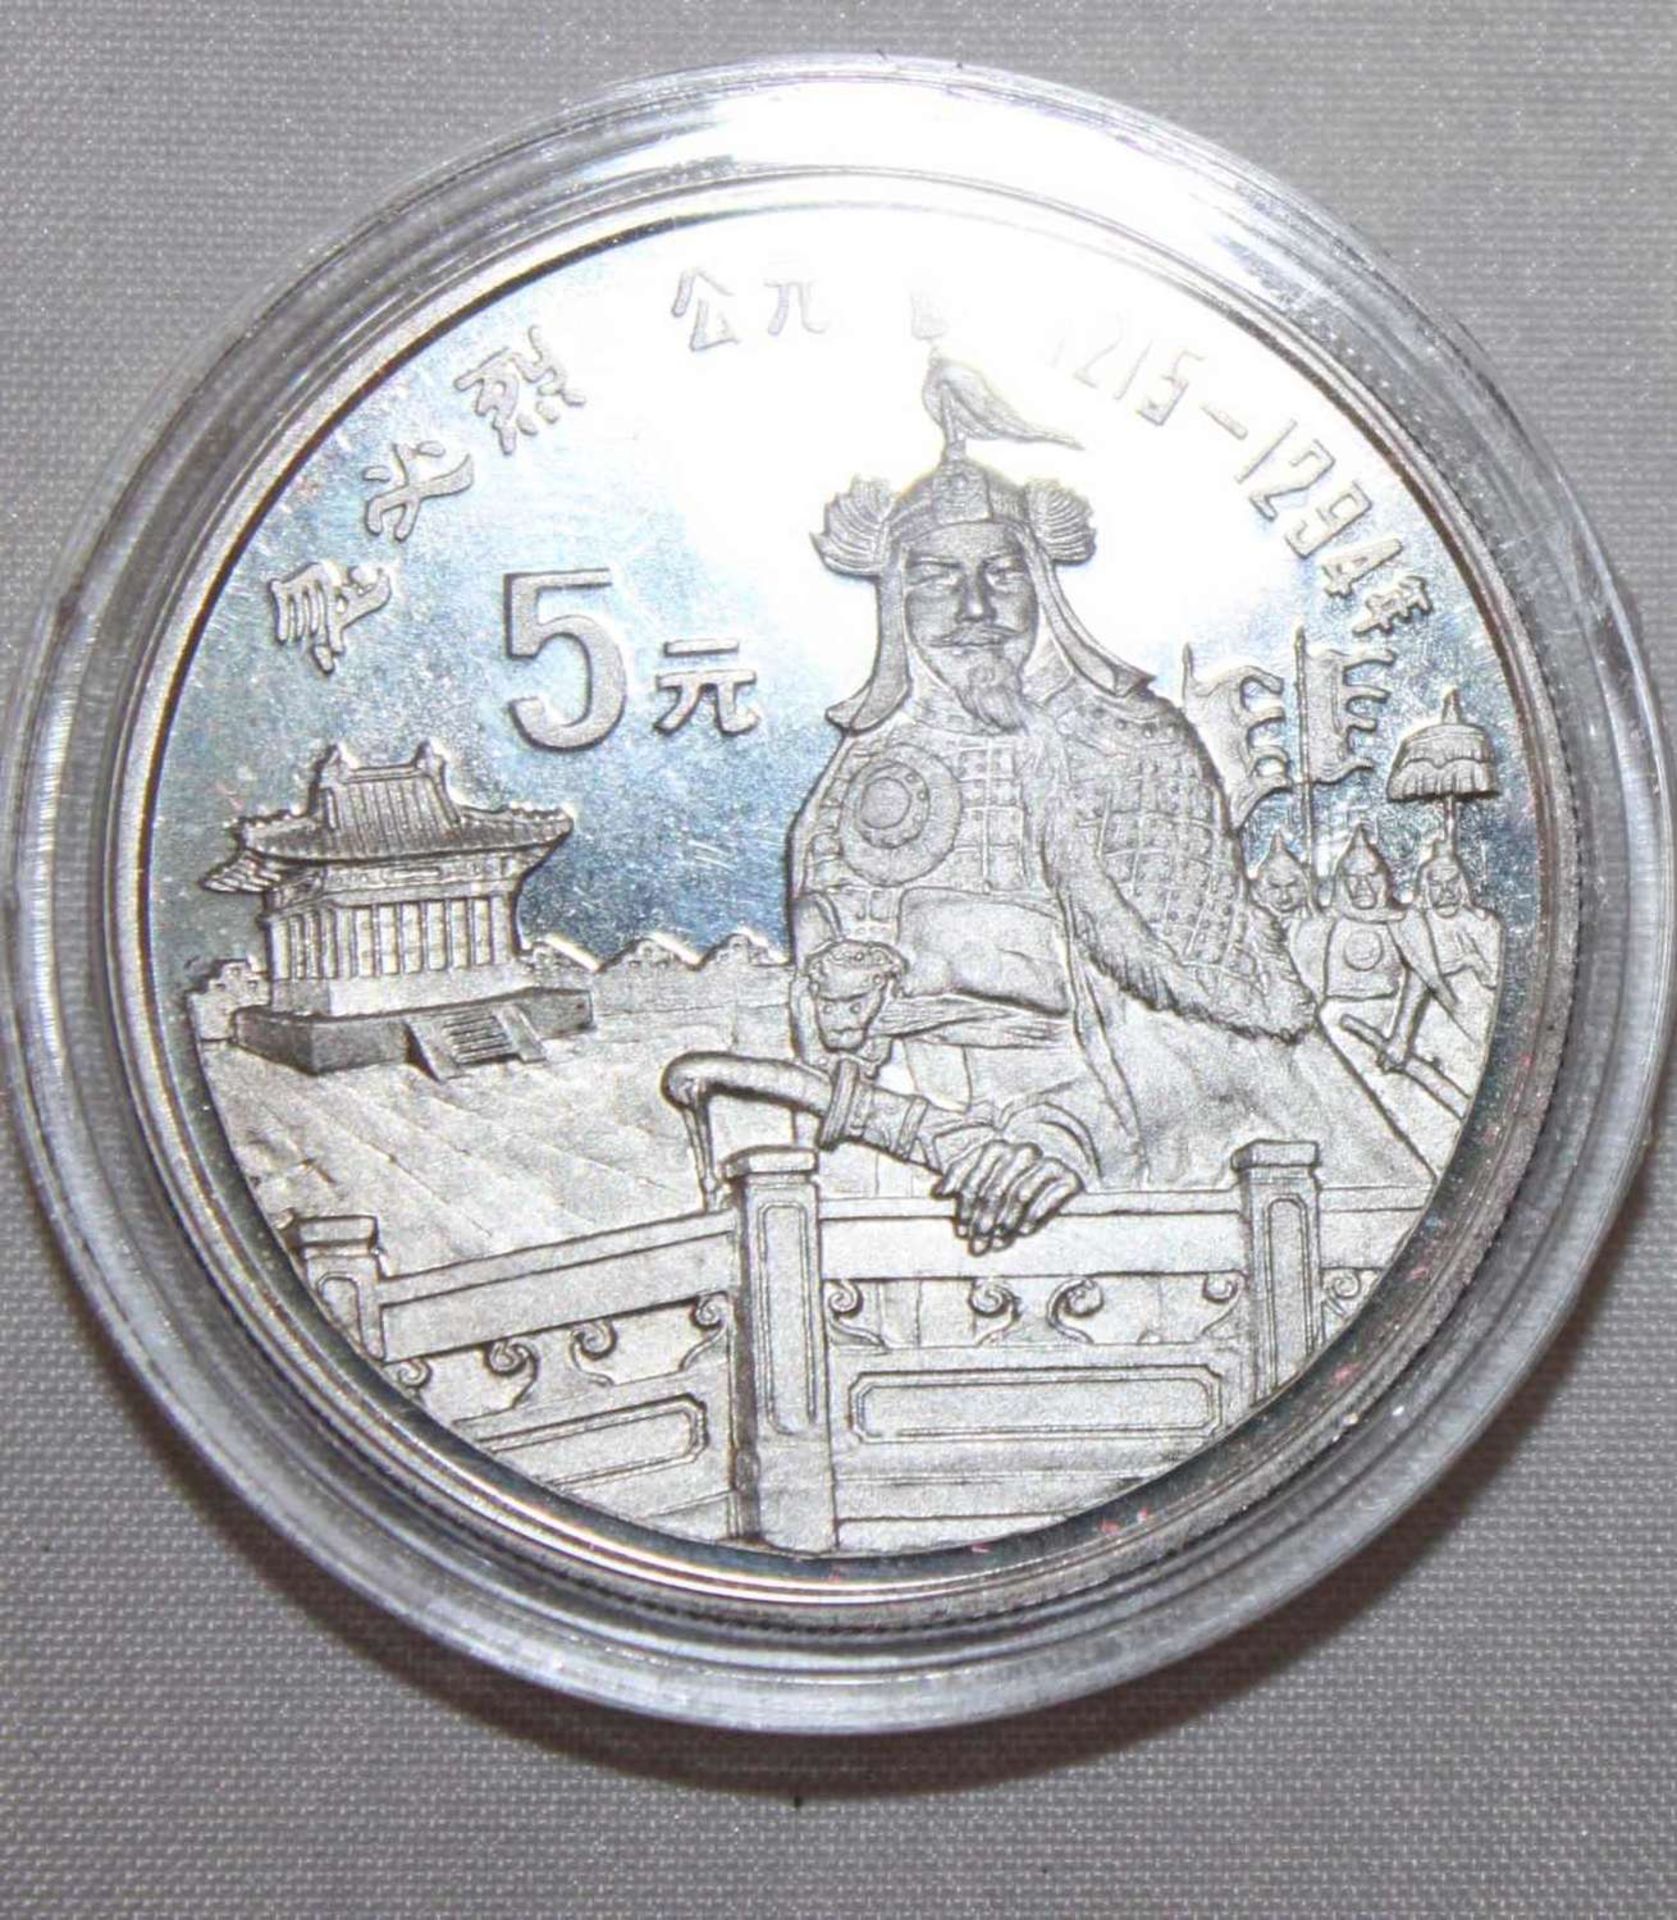 China 1989, 5 Yuan - Silbermünze "Kublai Khan". Silber 900. Gewicht: 22,2 gr.. In Kapsel. Erhaltung: